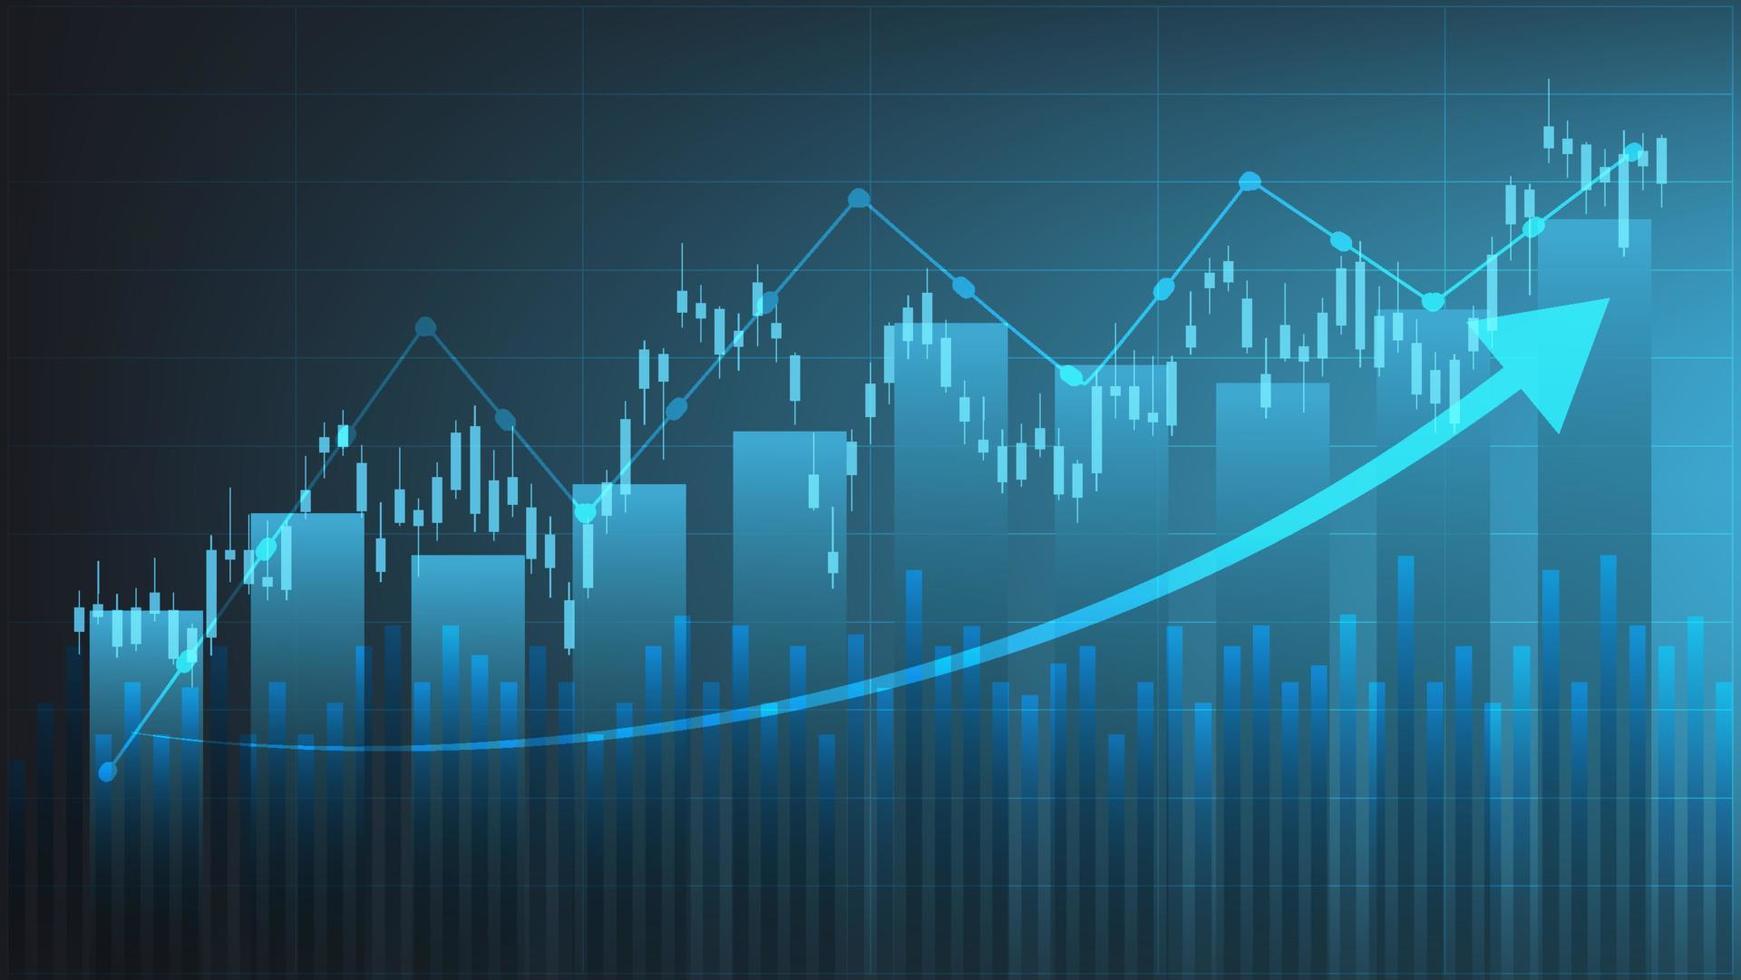 finansiell företag statistik med bar Graf och ljusstake Diagram visa stock marknadsföra pris och valuta utbyta på mörk grön bakgrund vektor